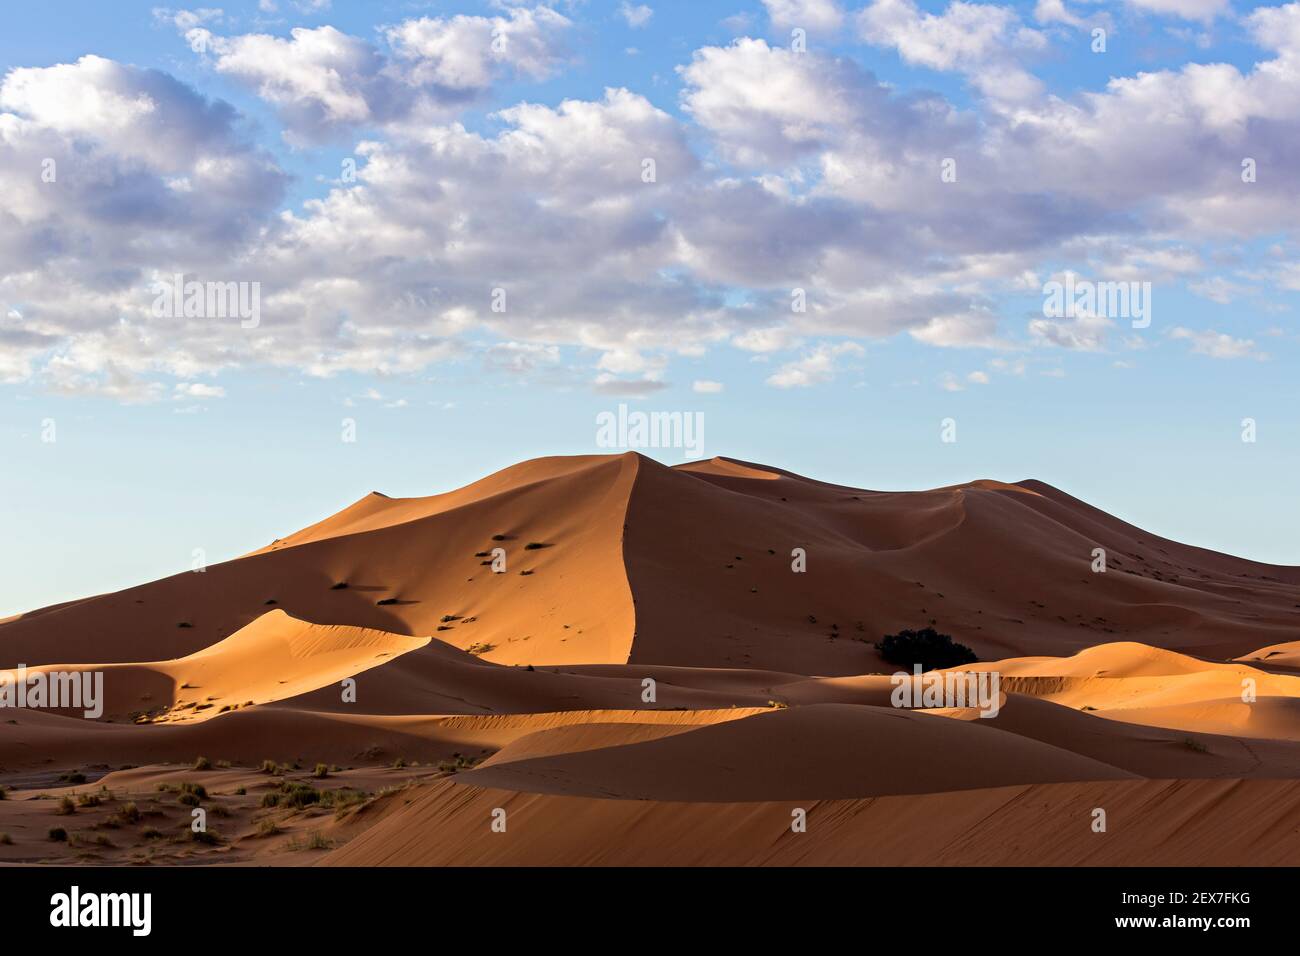 Maroc, Merzouga, les dunes d'Erg Chebbi au lever du soleil, les dunes désertiques s'étendent sur 30 km et atteignent des hauteurs de 250 mètres Banque D'Images